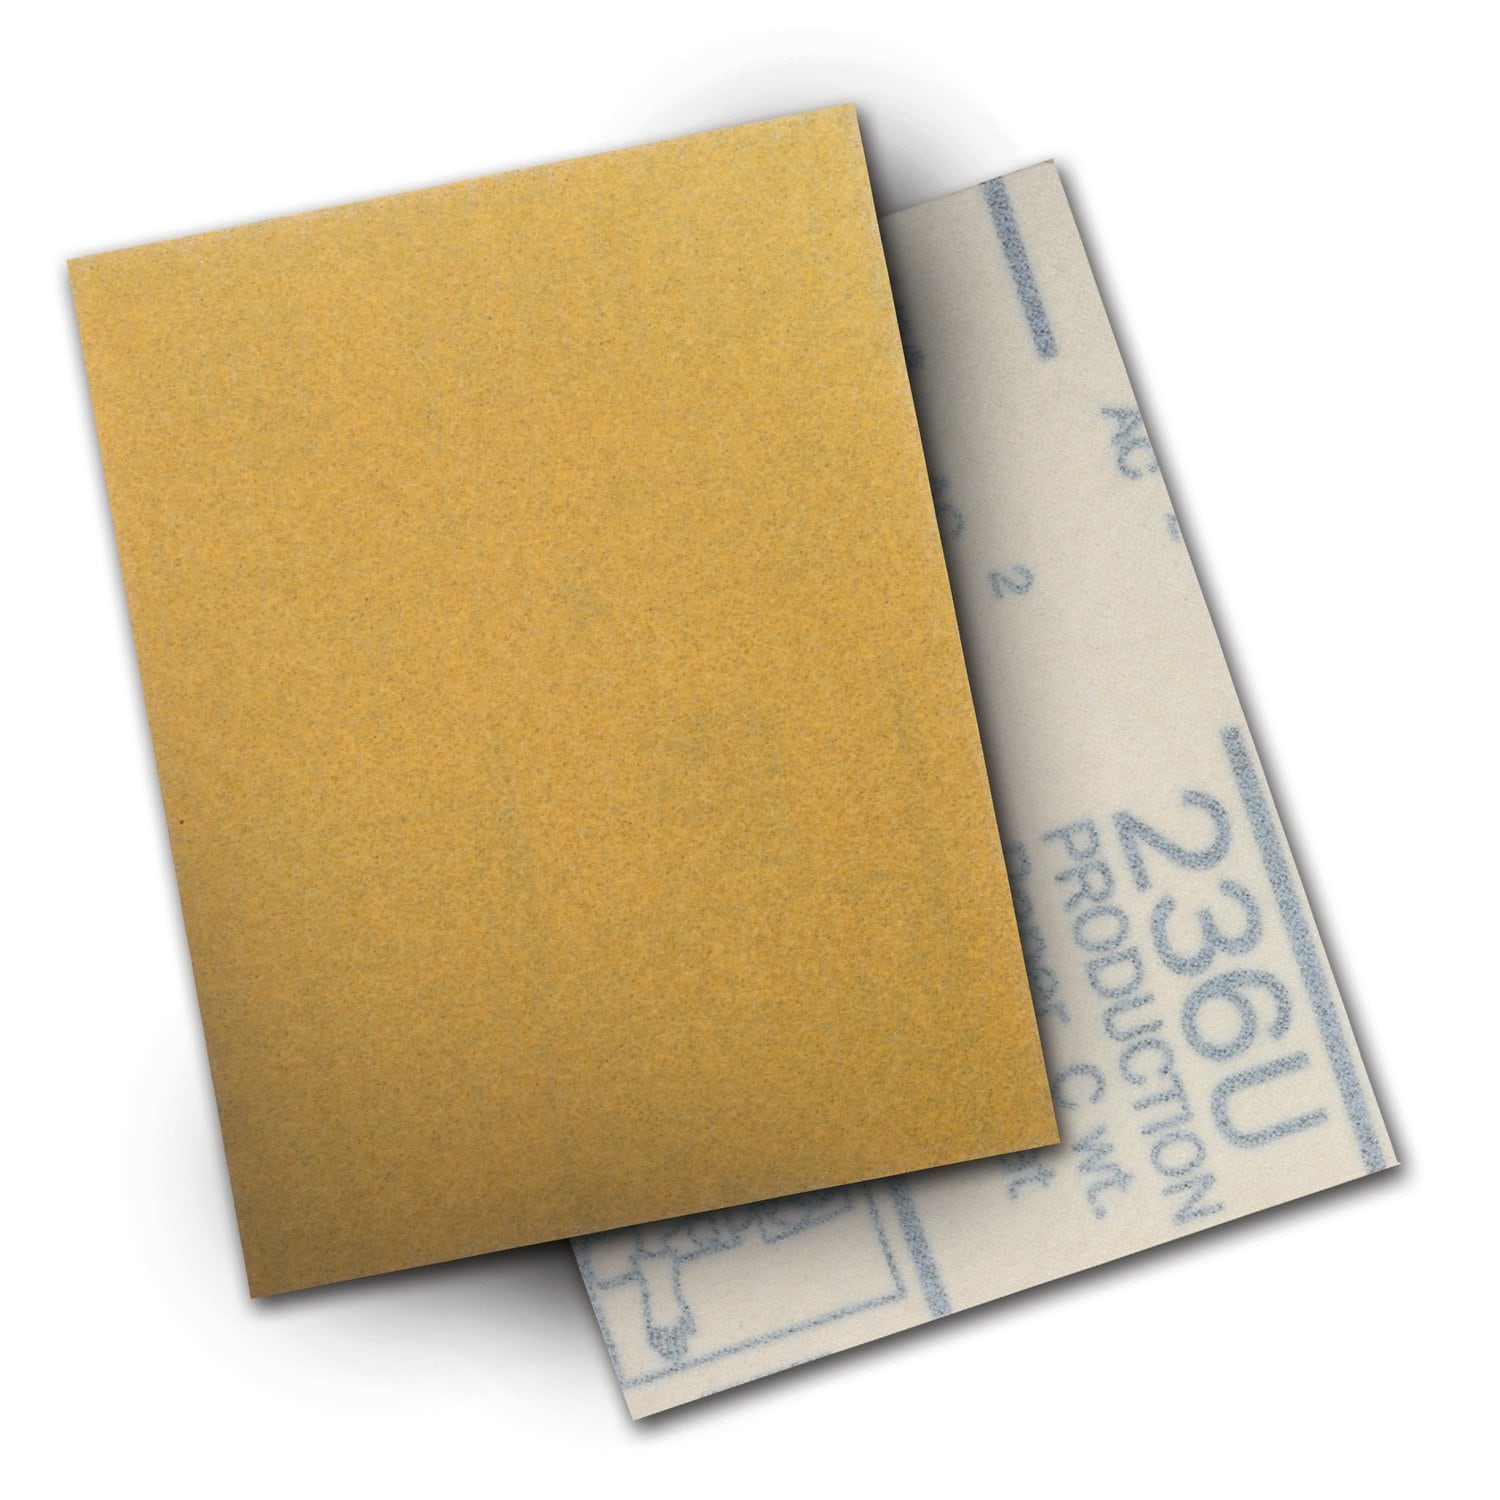 7000119276 - 3M Hookit Paper Sheet 236U, P80 C-weight, 3 in x 4 in, 50/Carton, 500
ea/Case